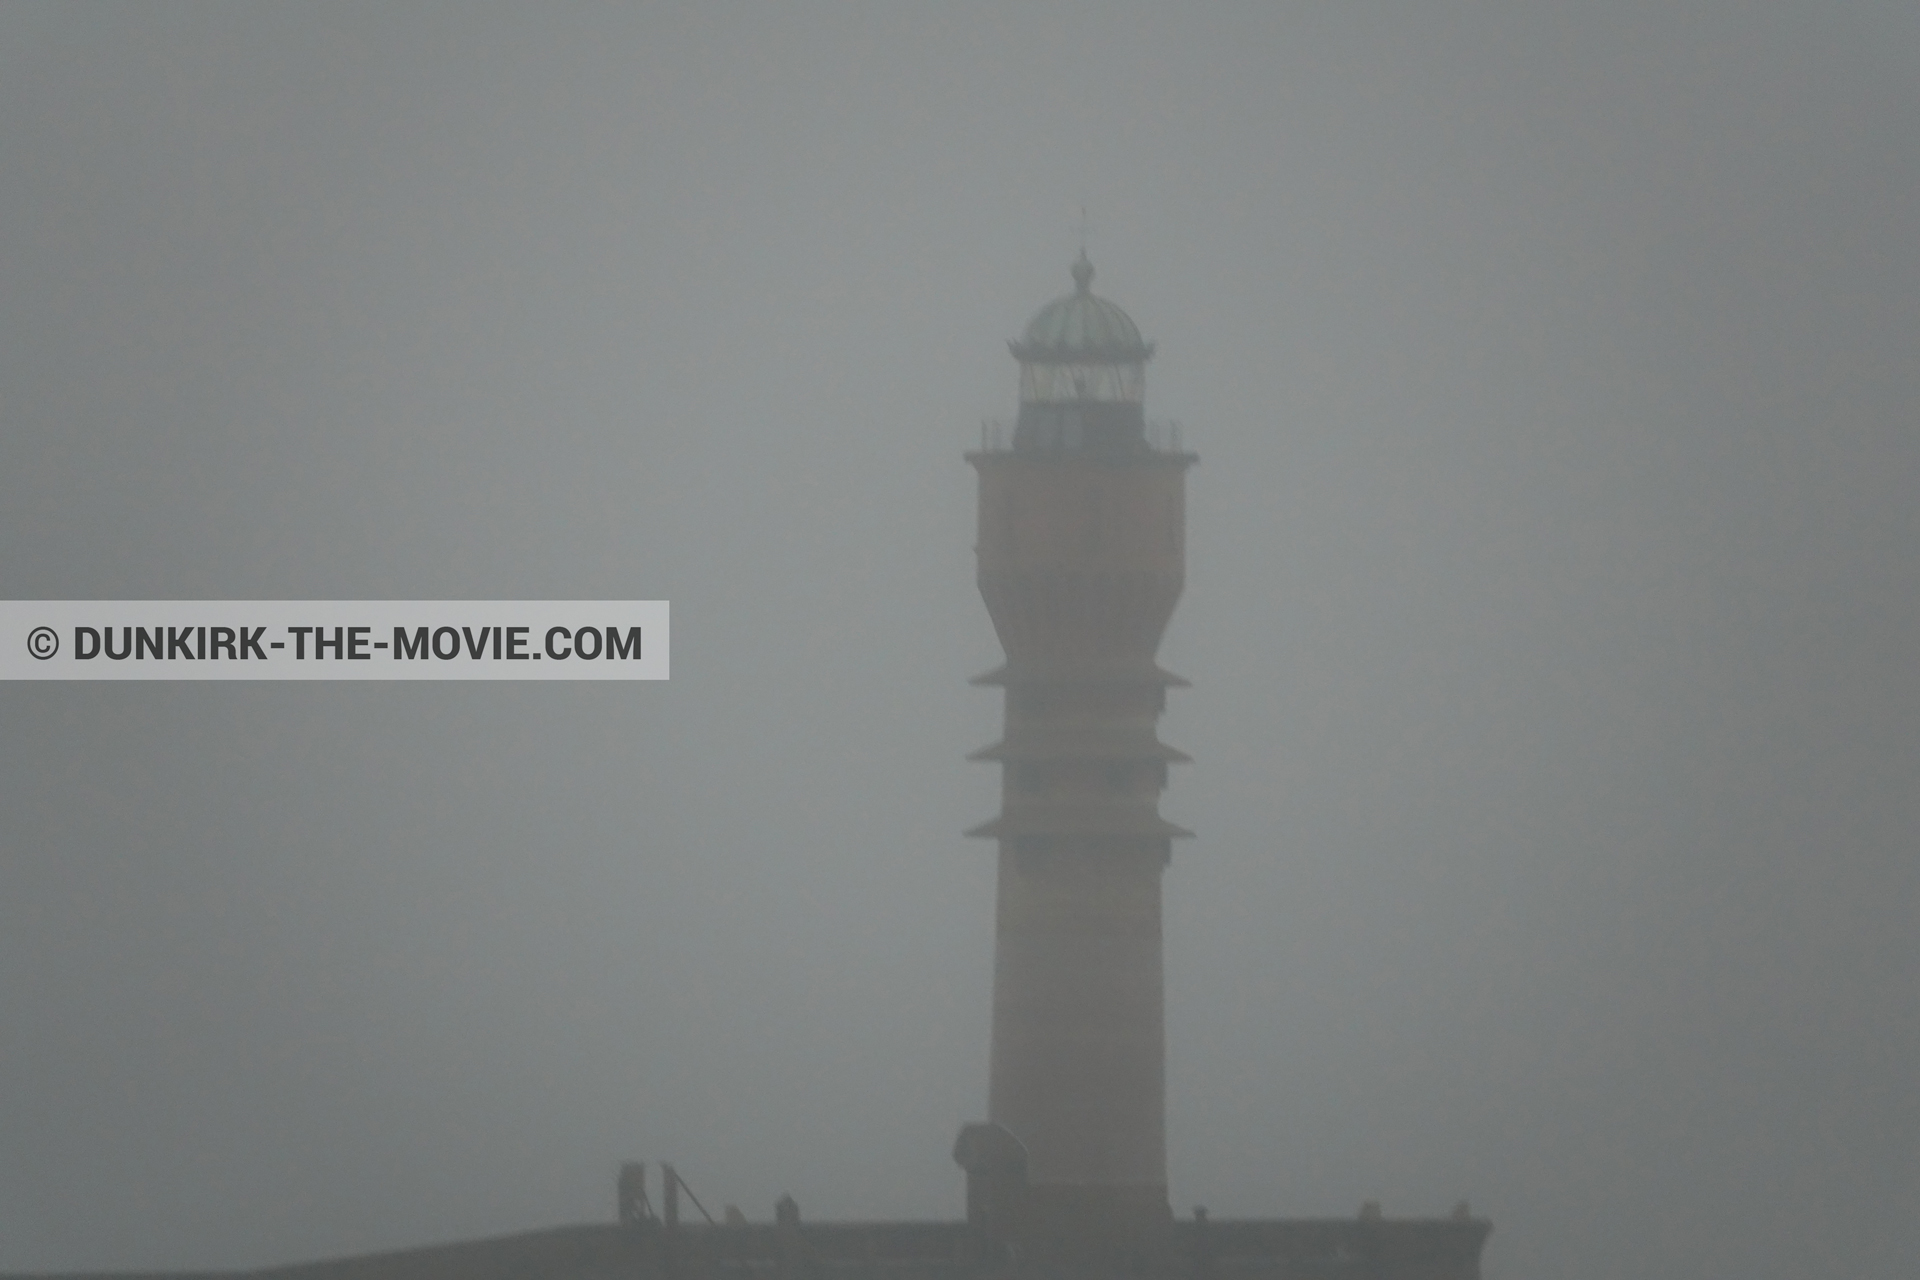 Photo avec ciel gris, mer agitée, phare de St Pol sur Mer,  des dessous du Film Dunkerque de Nolan